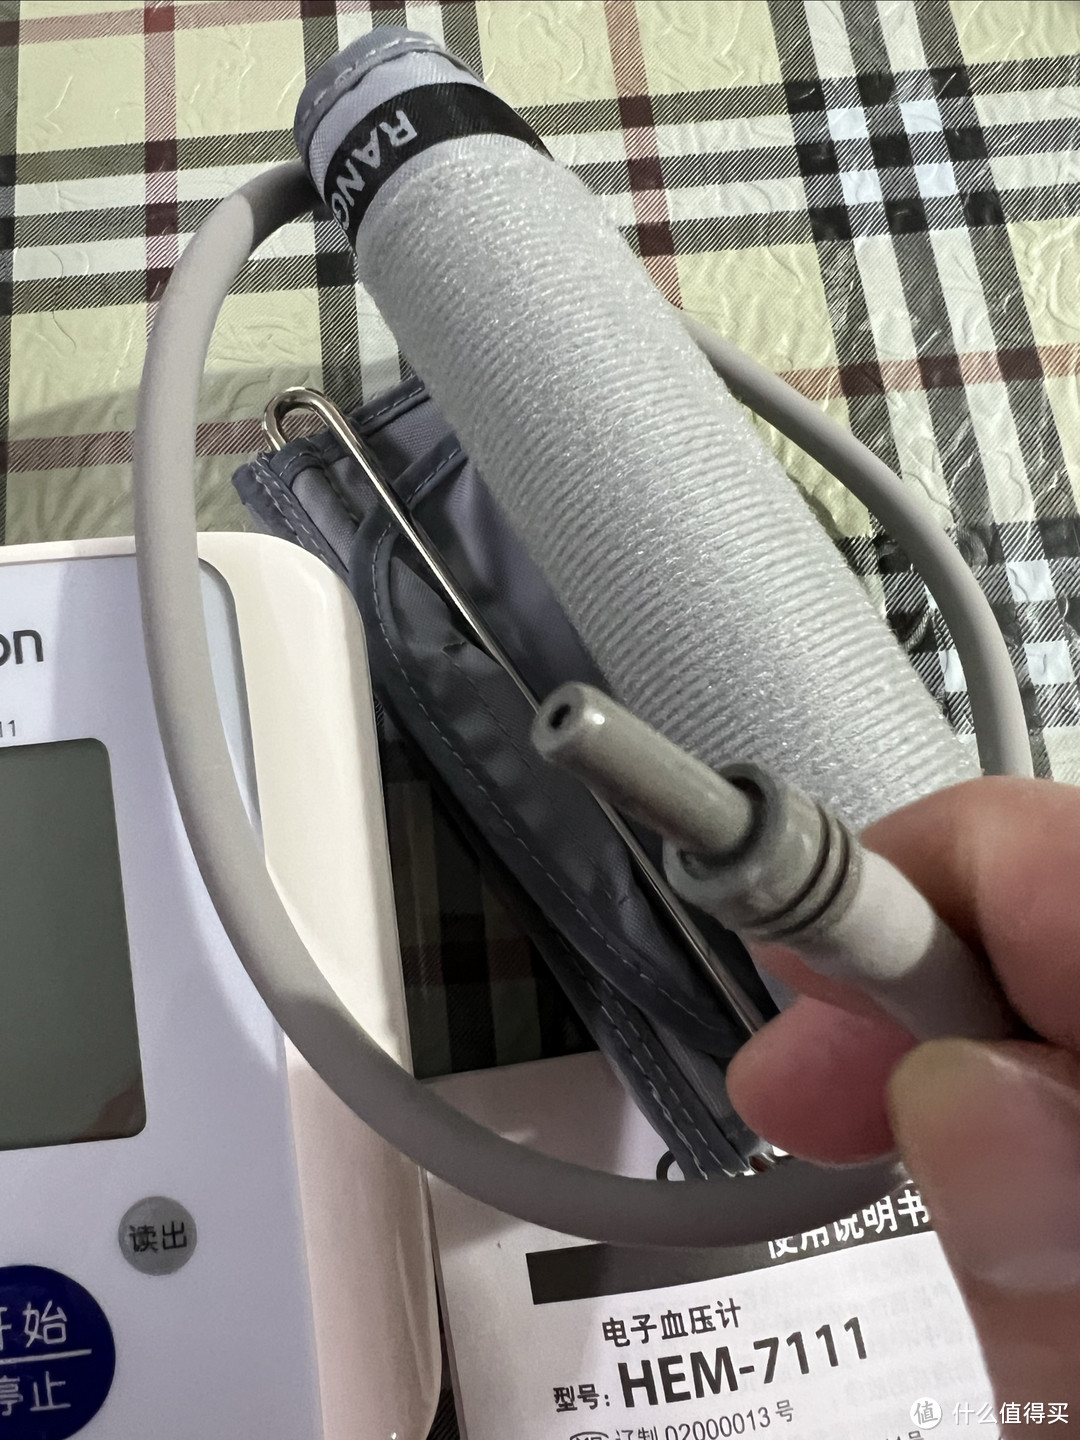 家里还有一款10多年前的欧姆龙电子血压计，现在使用一切正常！